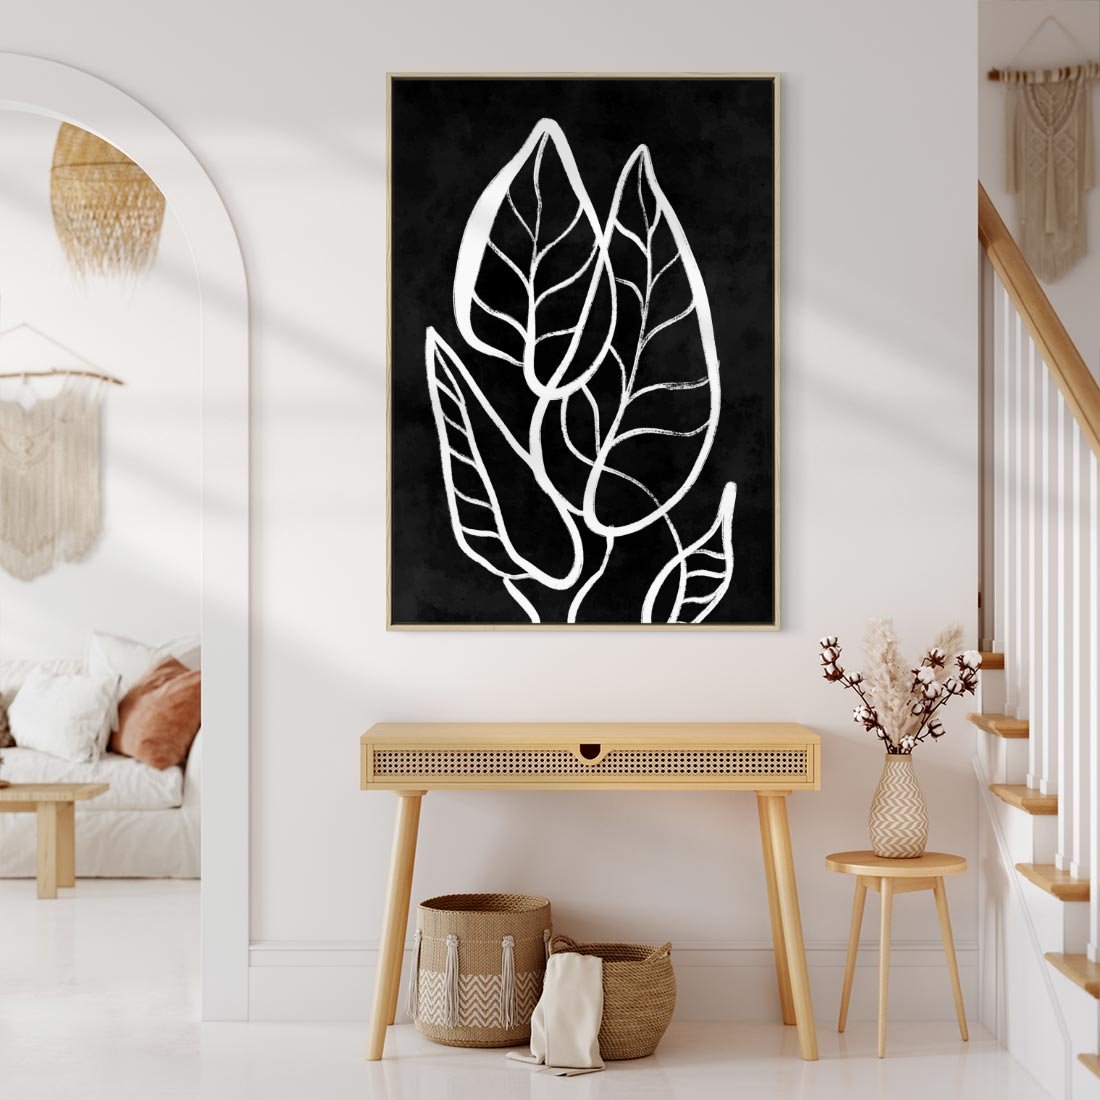 Obraz w ramie 50x70 - Lustrzane Odbicie - mroczna sztuka, minimalizm - rama drewno